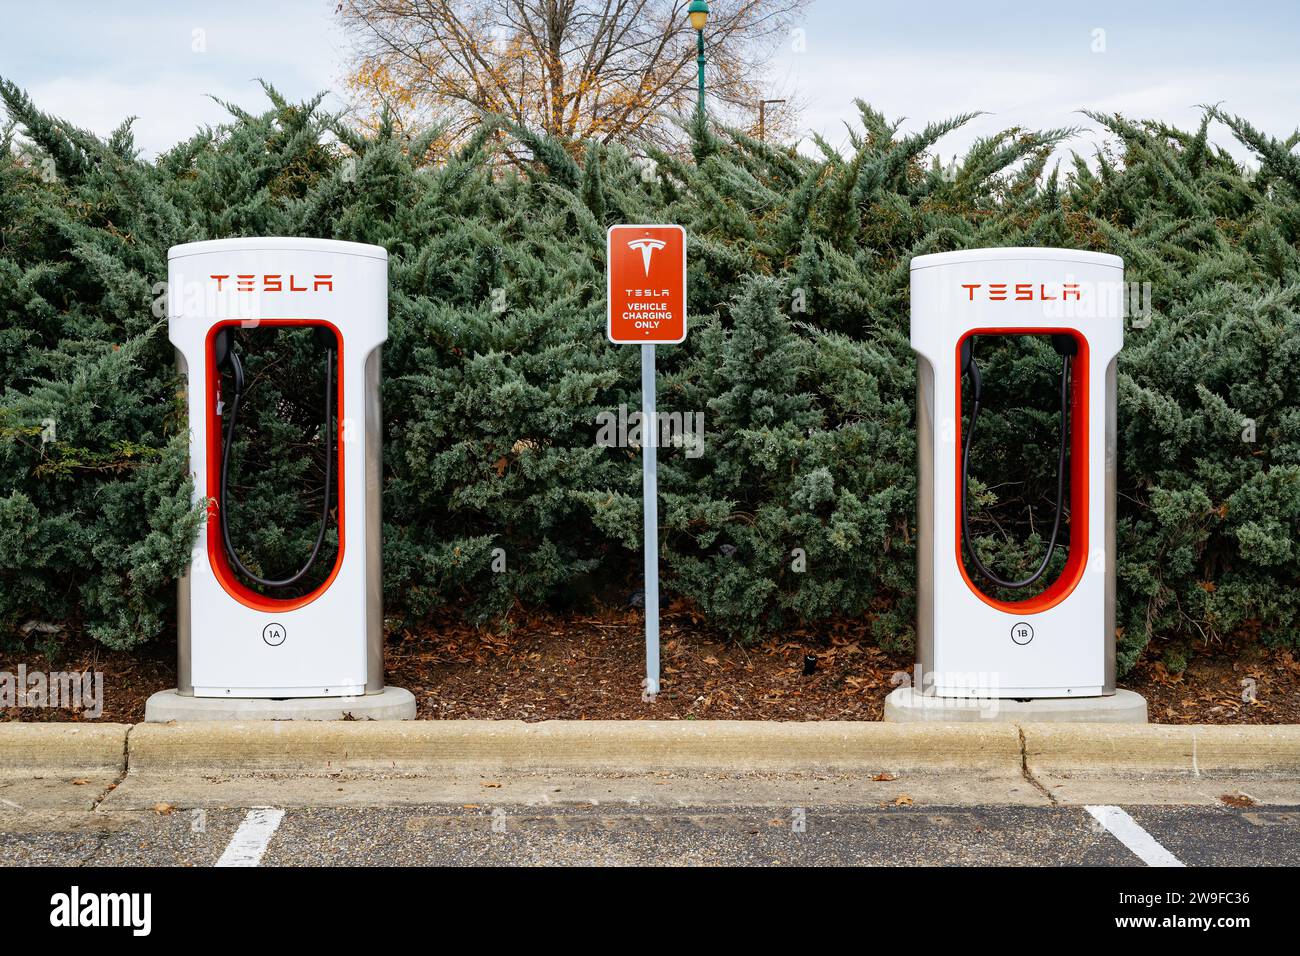 Stations de recharge de voitures électriques Tesla pour les voitures écologiques dans un parking de centre commercial à Montgomery Alabama, Etats-Unis. Banque D'Images